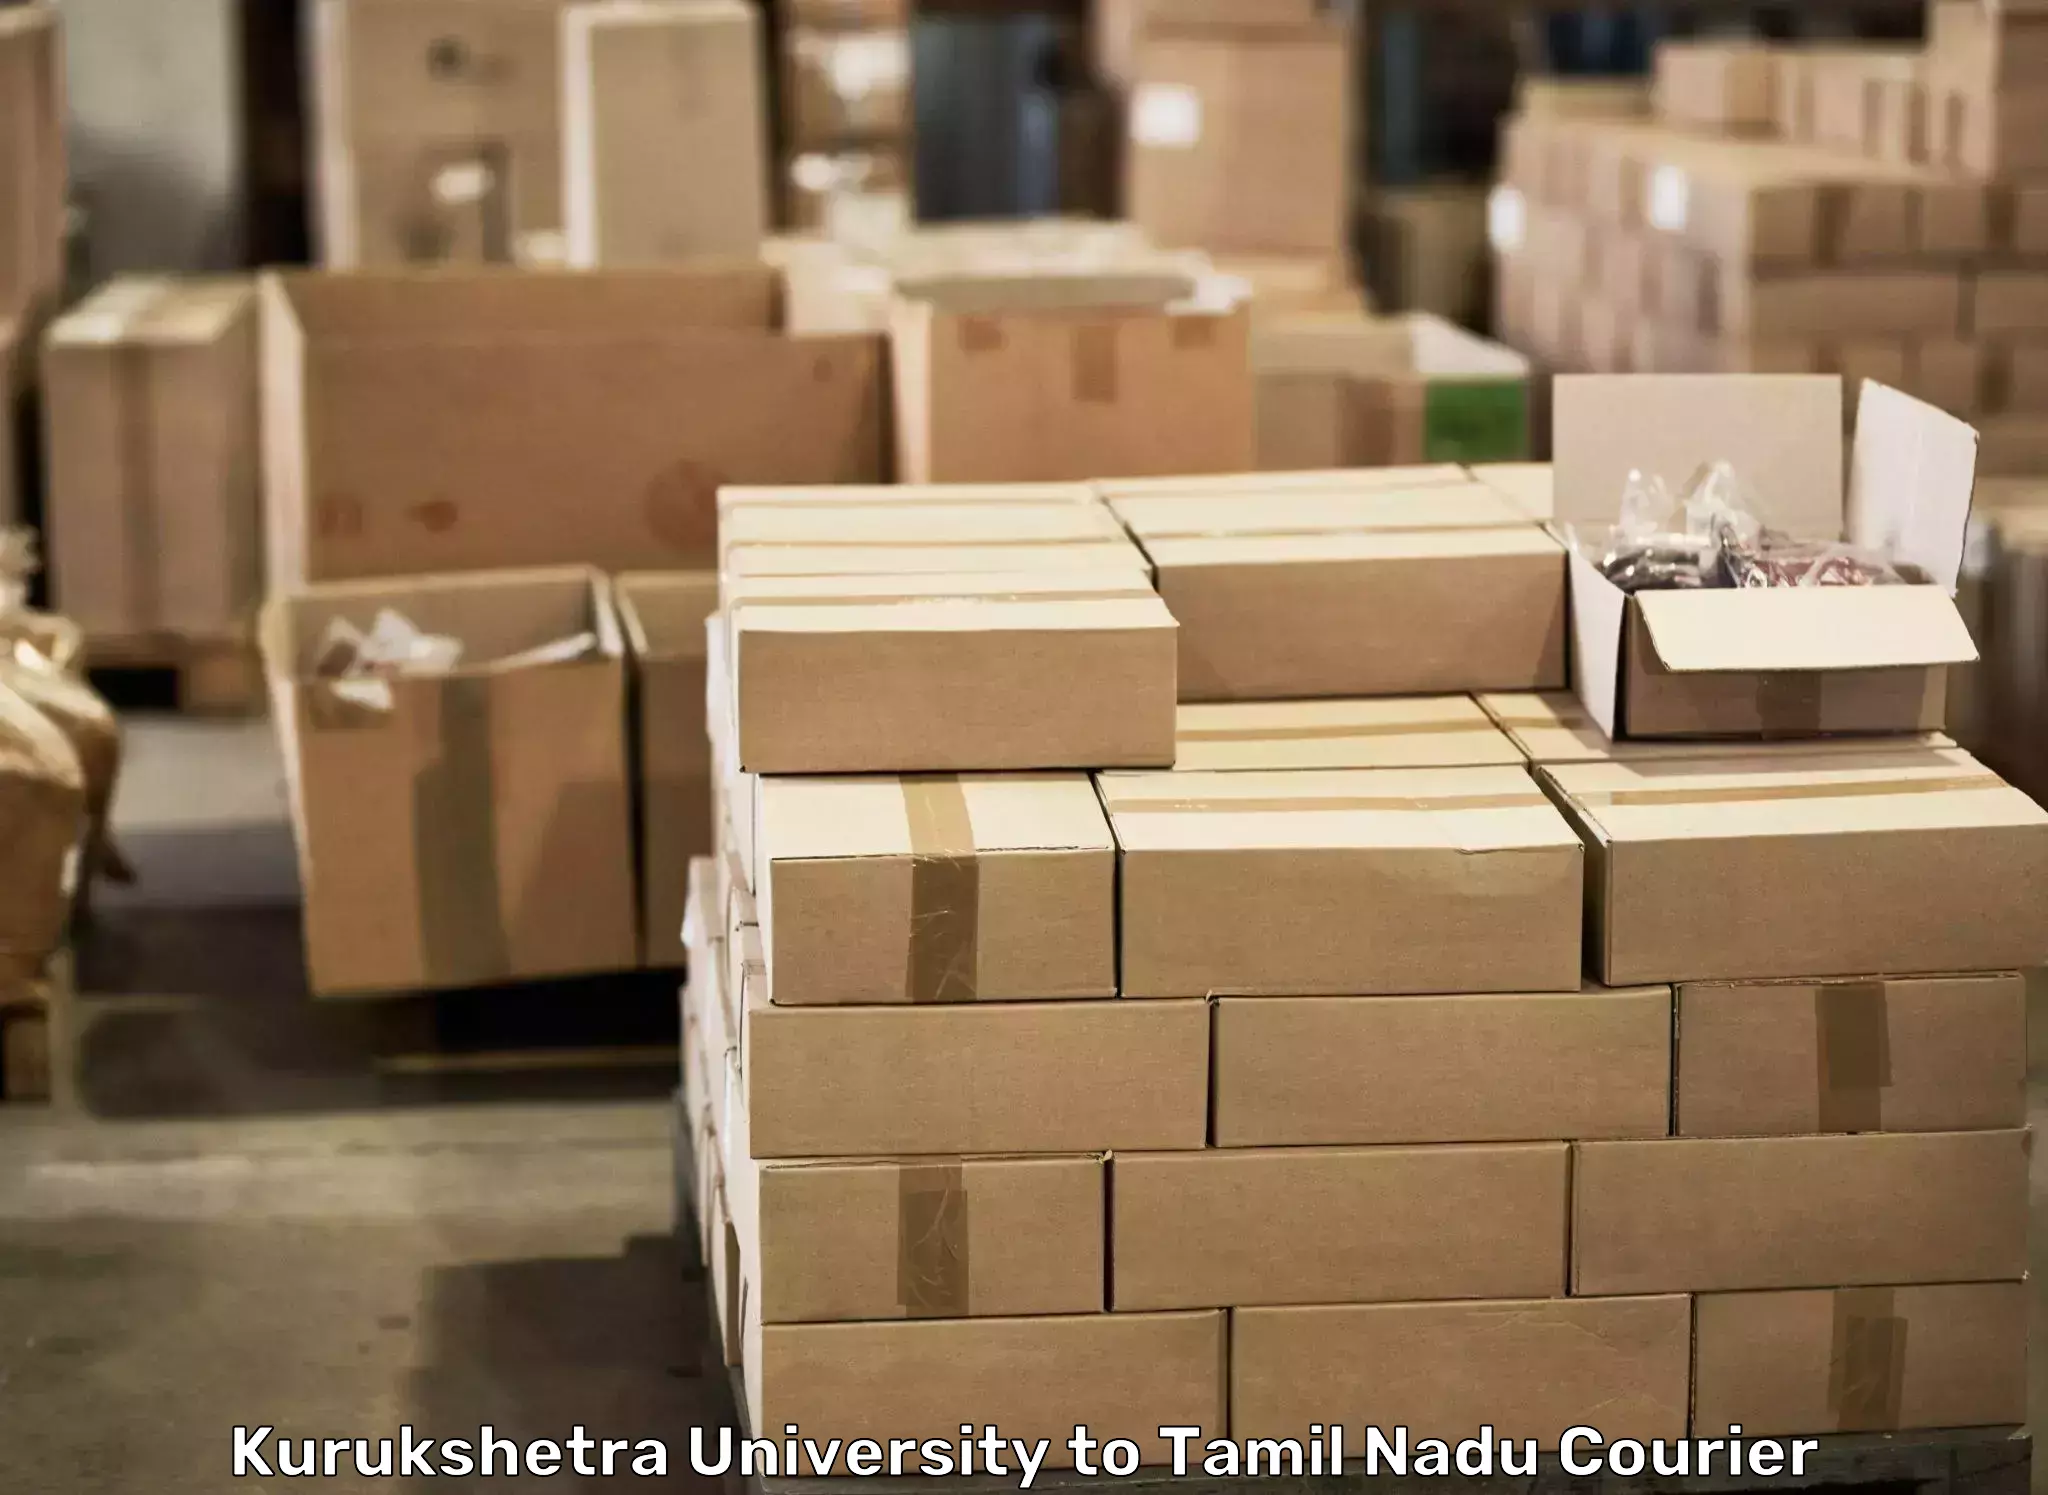 Furniture moving services Kurukshetra University to Thiruporur